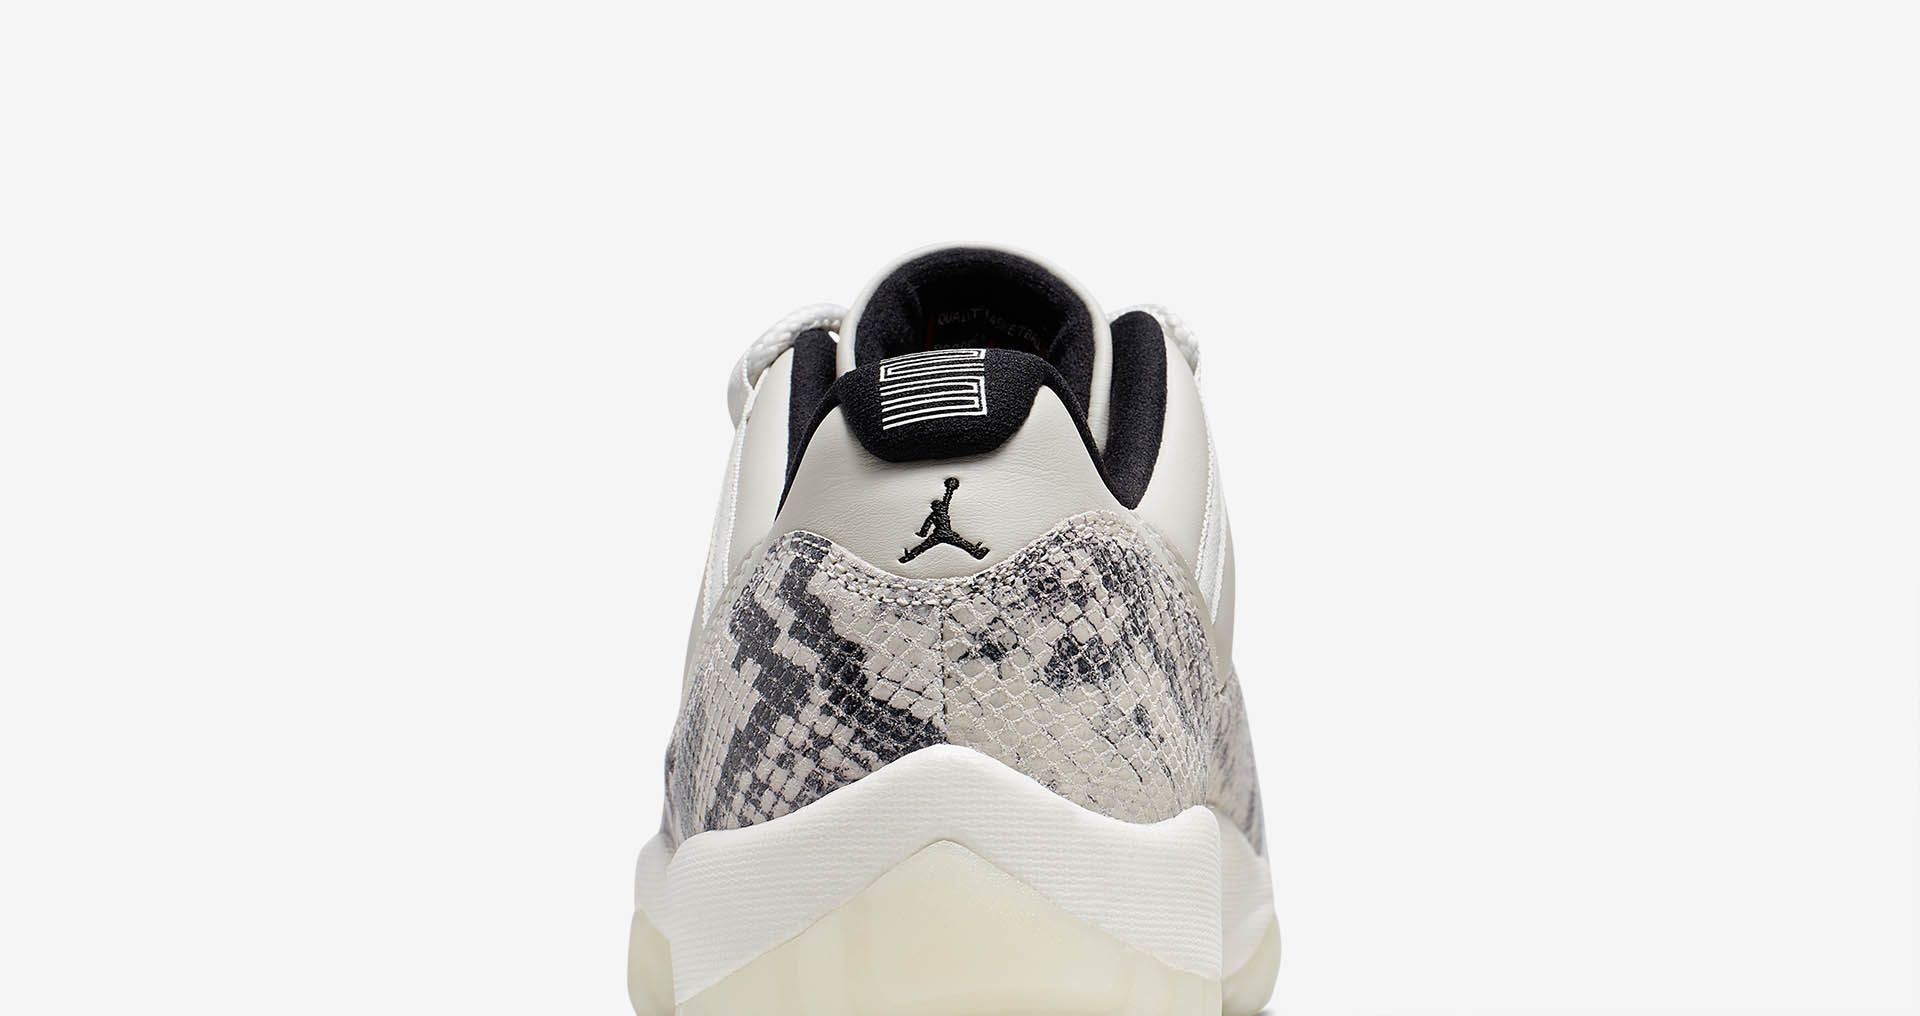 Air Jordan 11 Low 'Light Bone' Release Date. Nike SNKRS